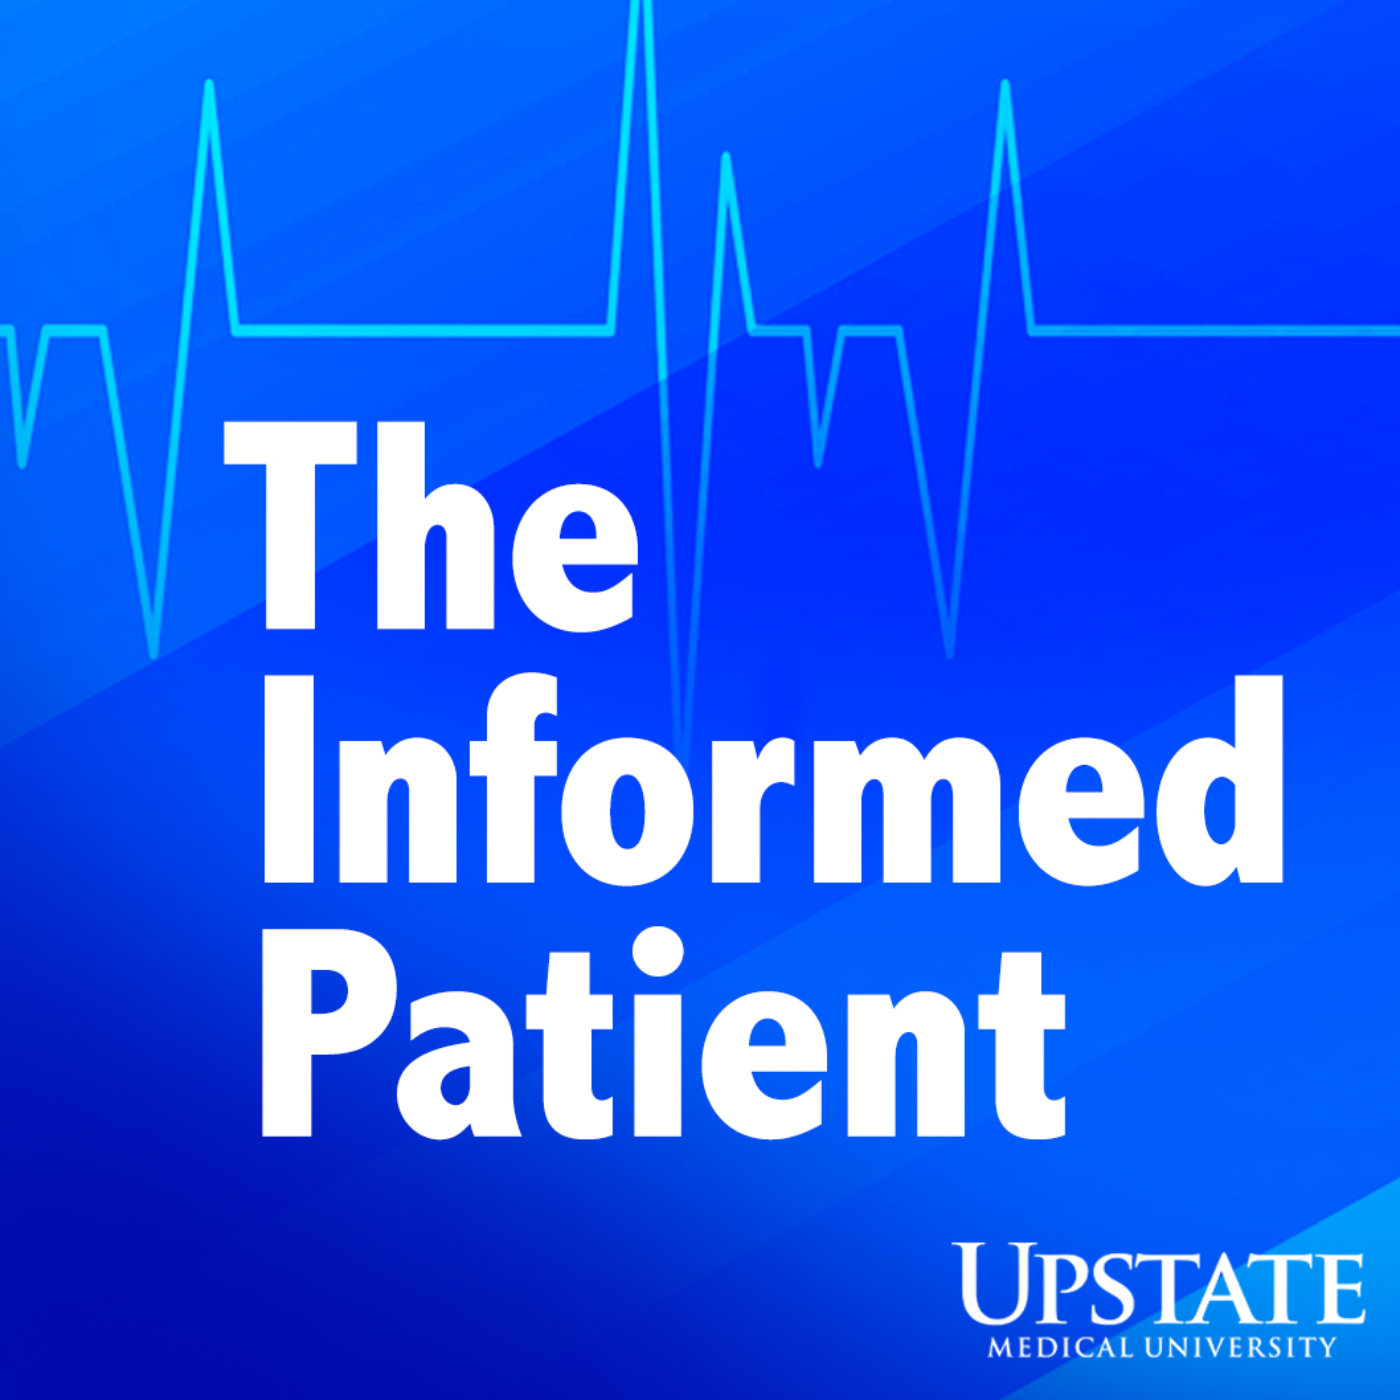 The Informed Patient